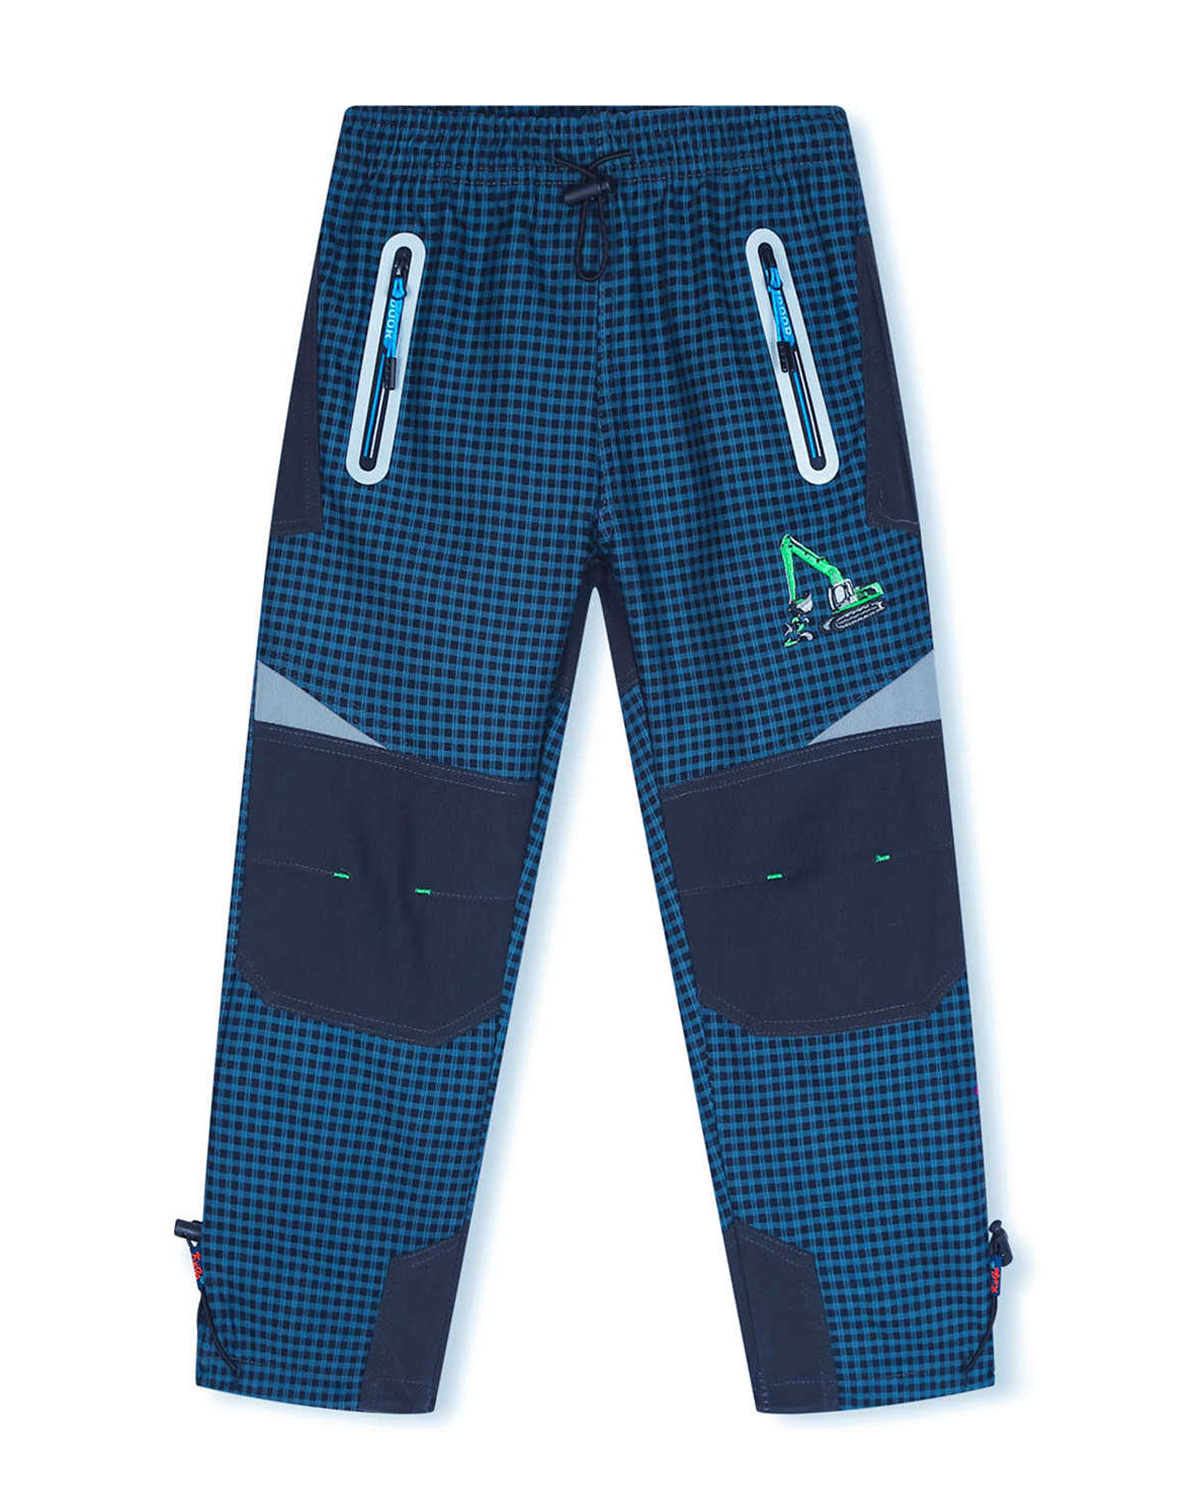 Chlapecké outdoorové kalhoty - KUGO G9650, tyrkysová / signální zipy Barva: Tyrkysová, Velikost: 110